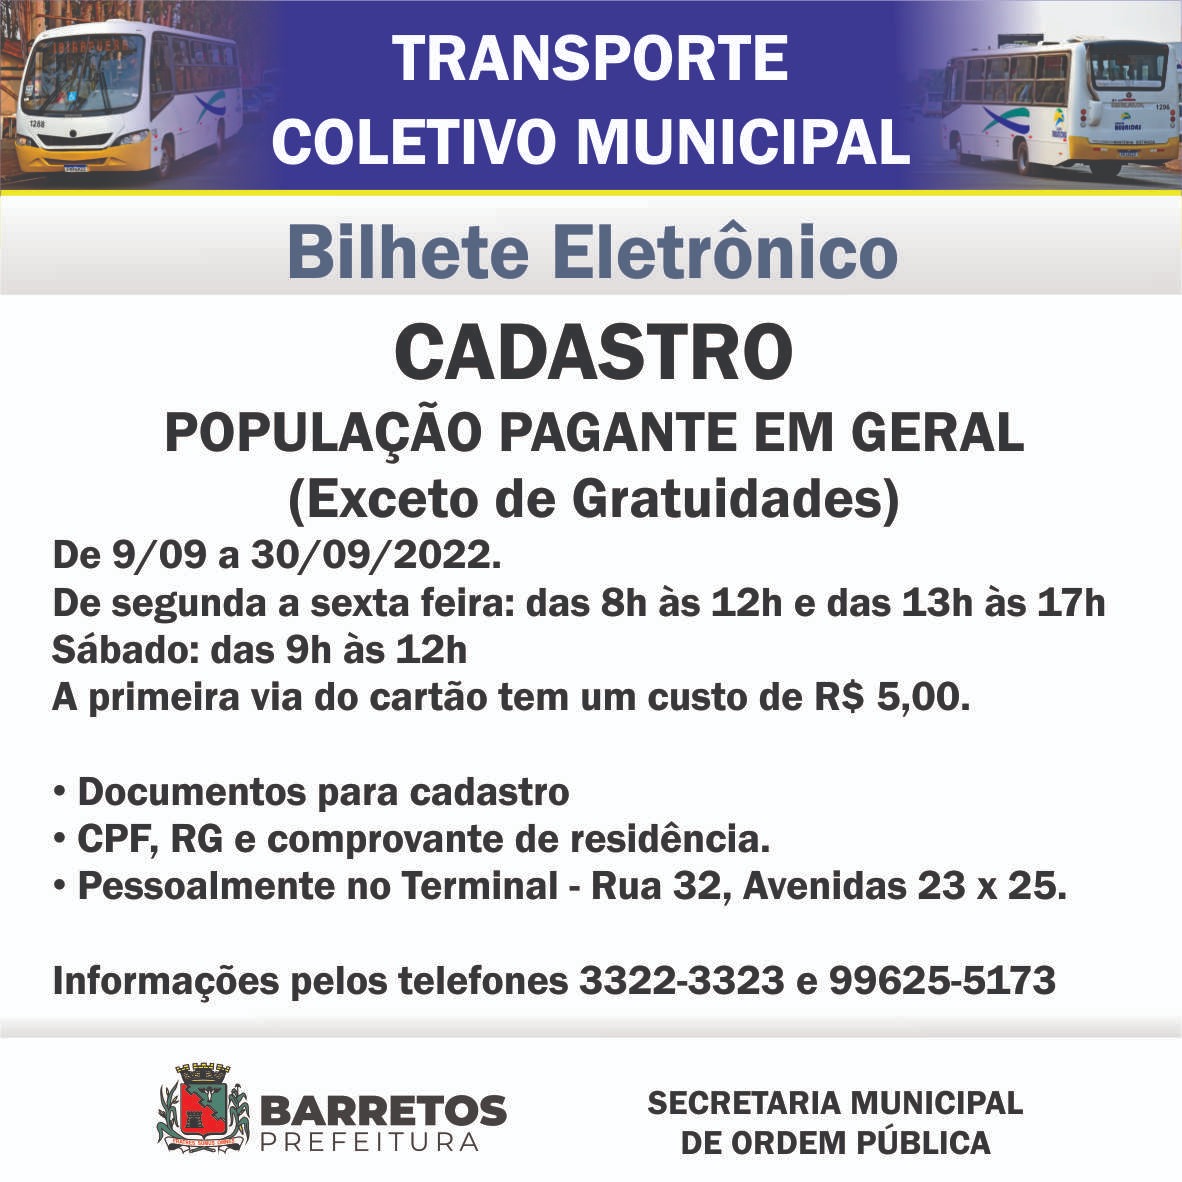 Transporte Coletivo Municipal de Barretos abre cadastro geral para Bilhete Eletrônico